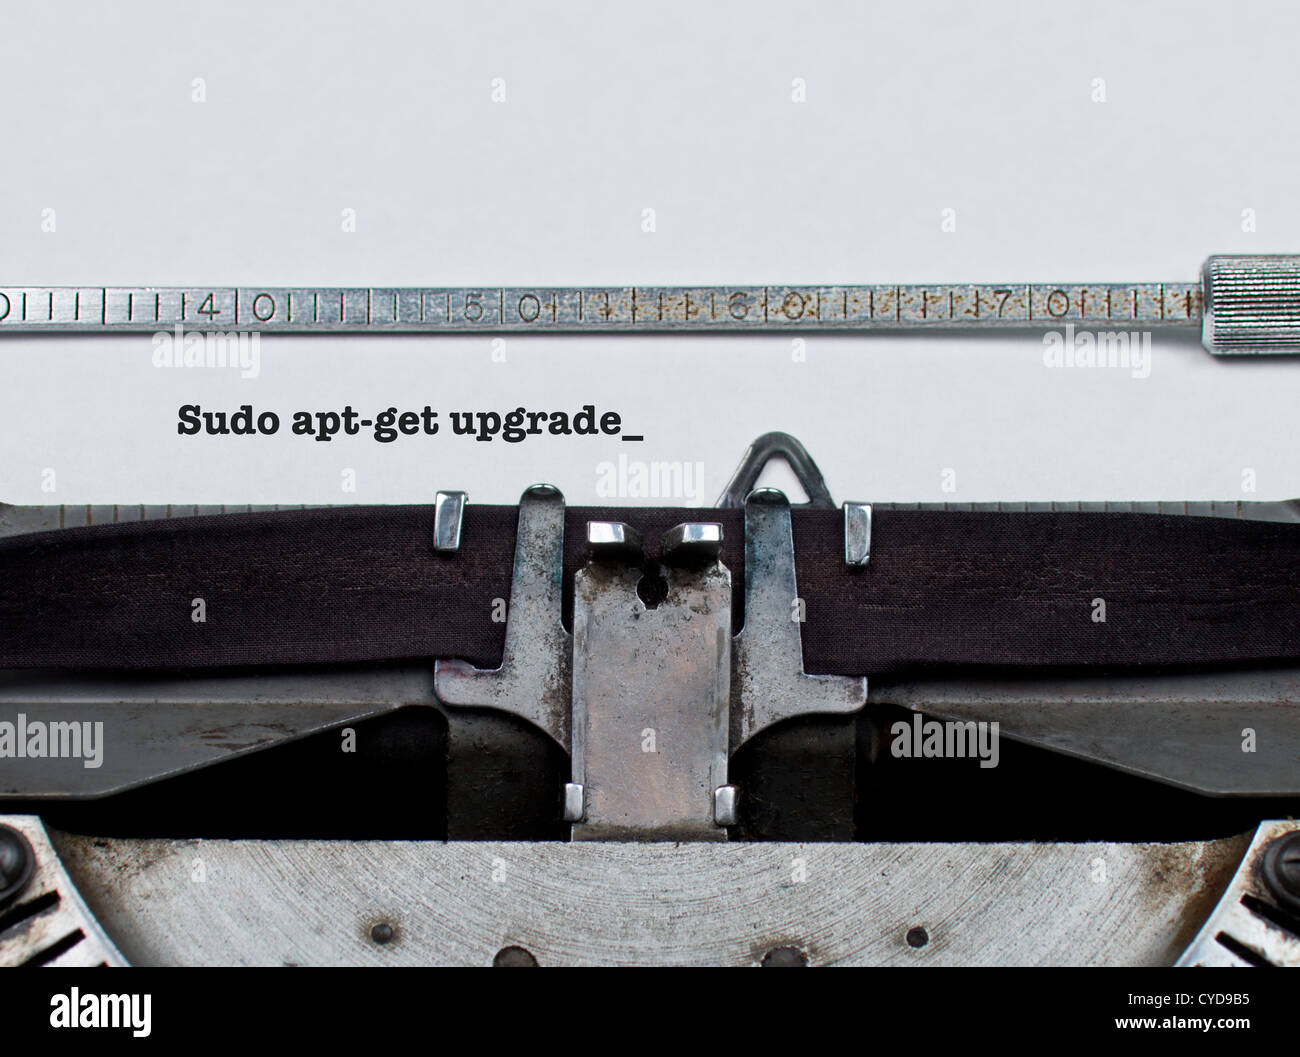 Sudo apt-get upgrade  Système Unix/Linux commande tapée sur une machine à écrire vintage - mise à jour du logiciel concept conceptuel Banque D'Images